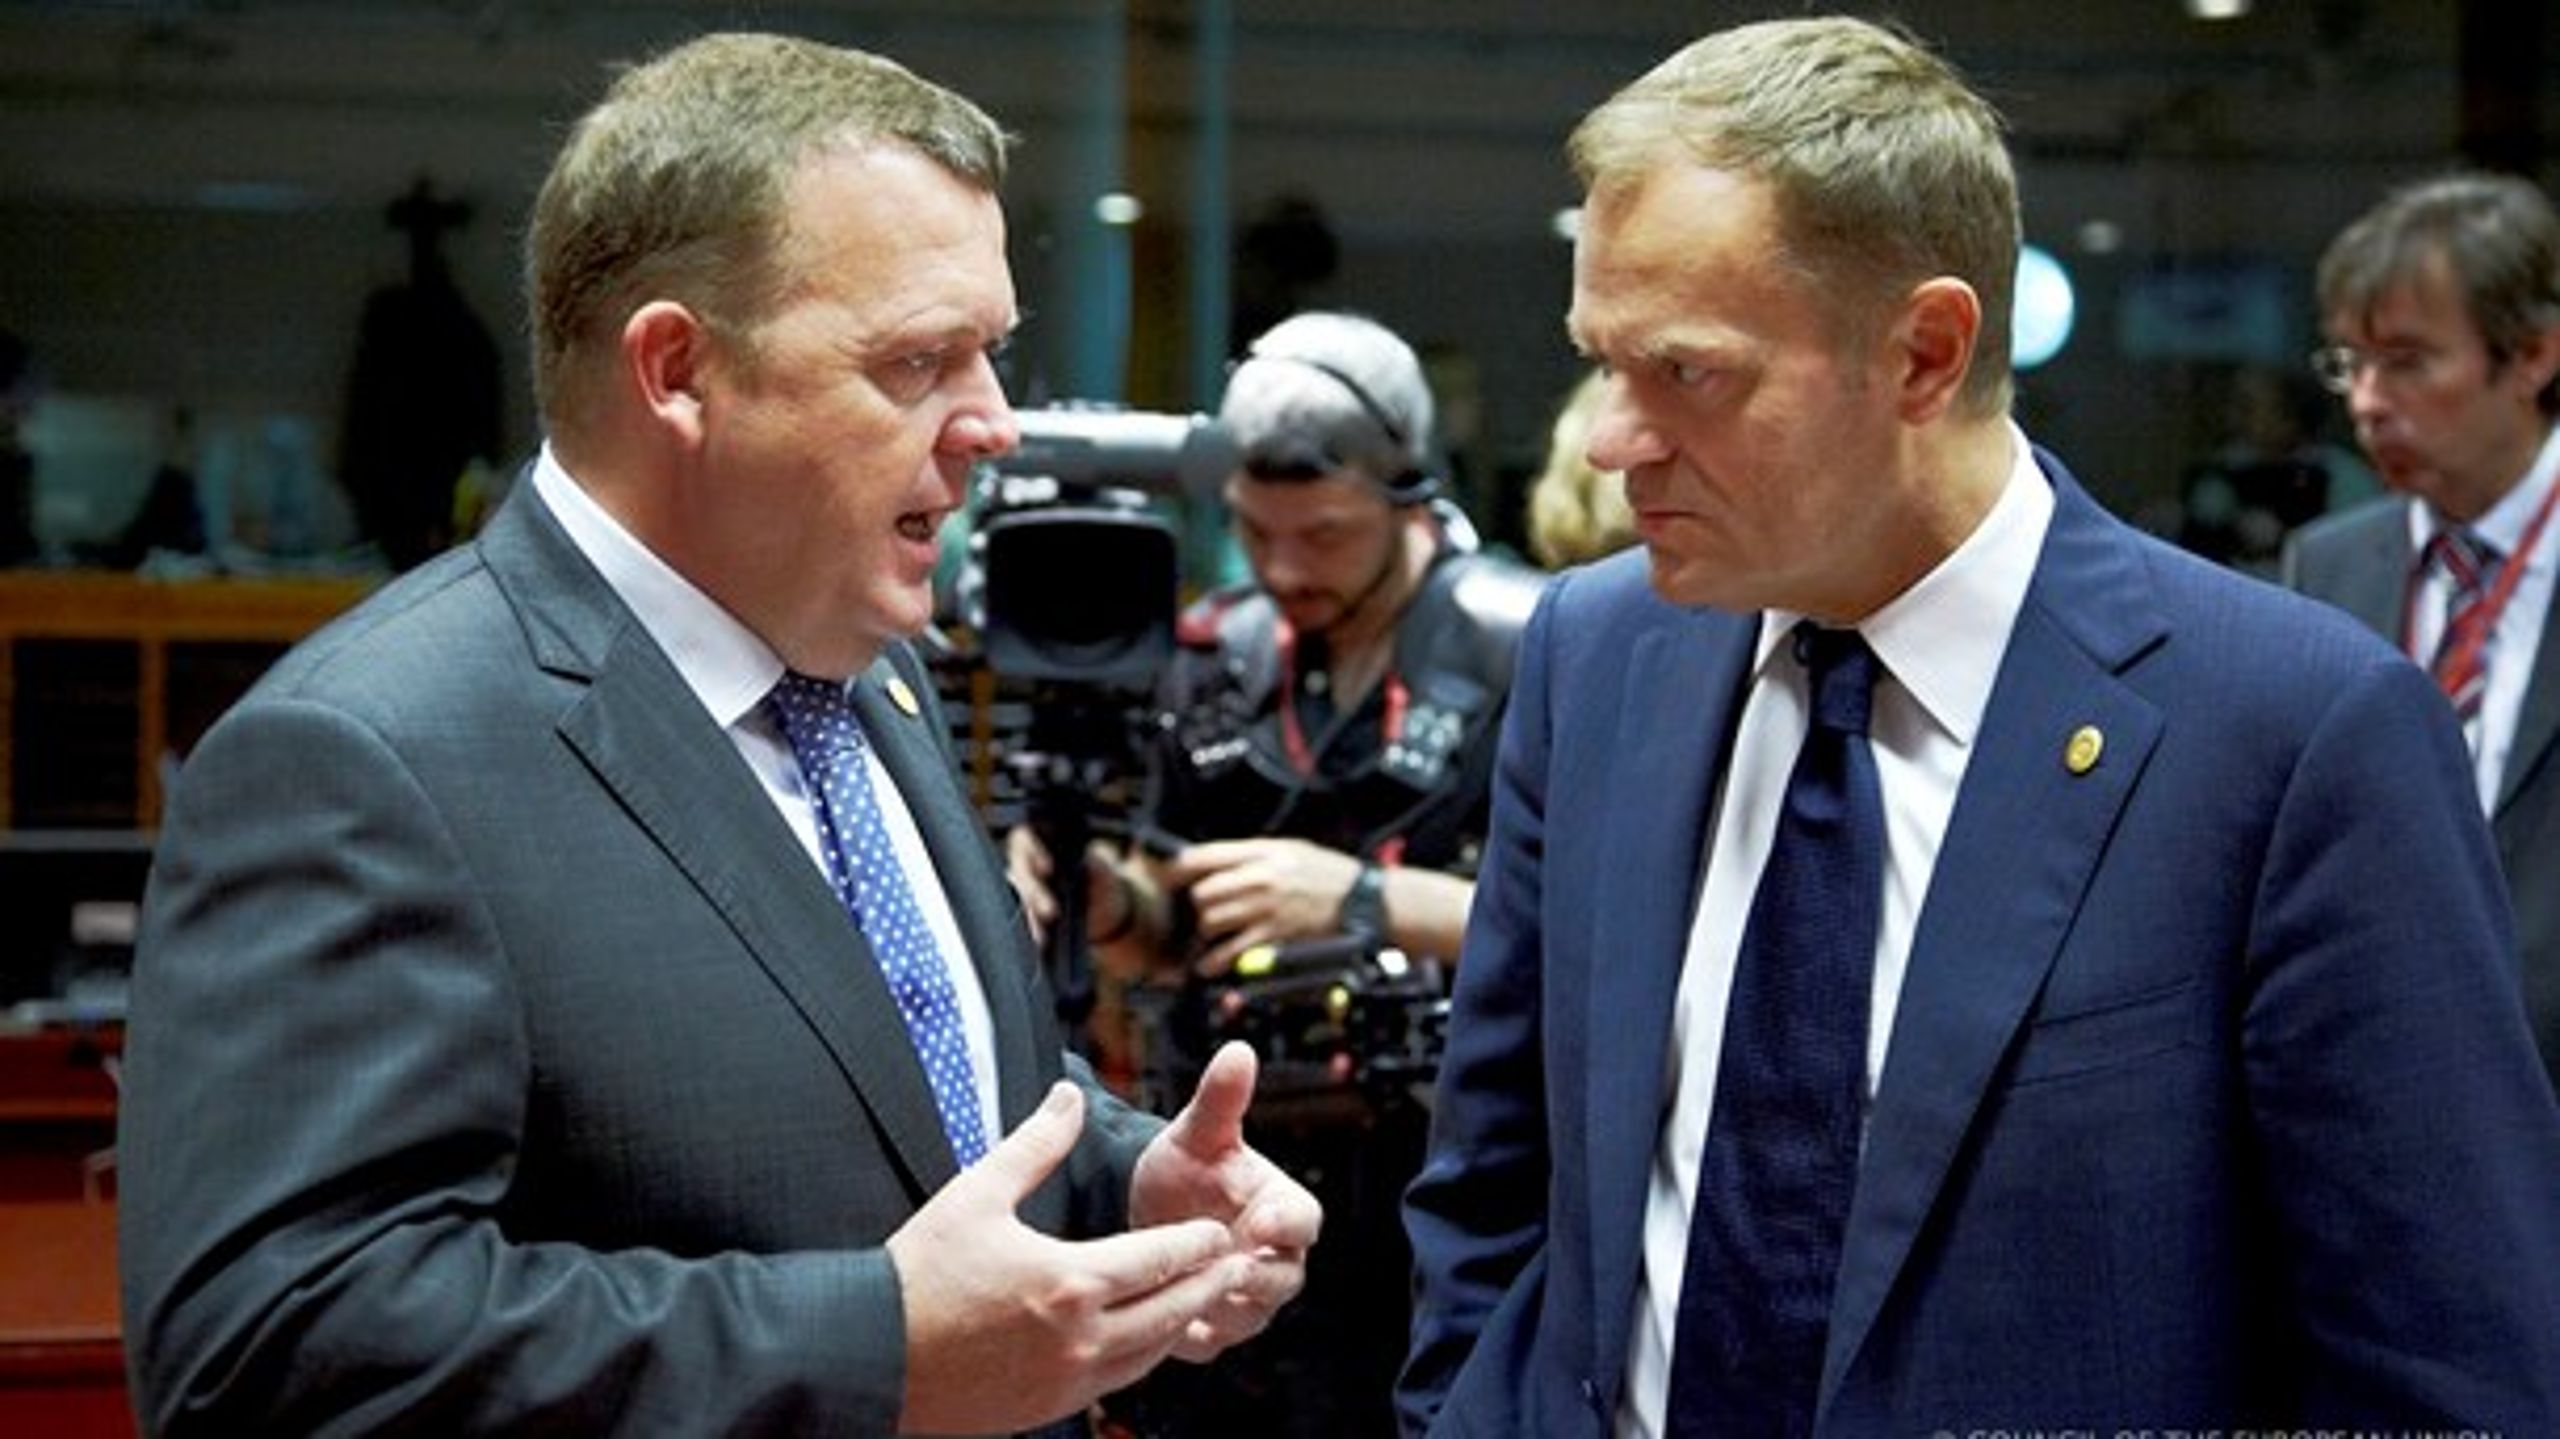 Ruslands opførsel bekymrer både statsminister Lars Løkke Rasmussen (tv.) og formand for Det Europæiske Råd Donald Tusk (th.)